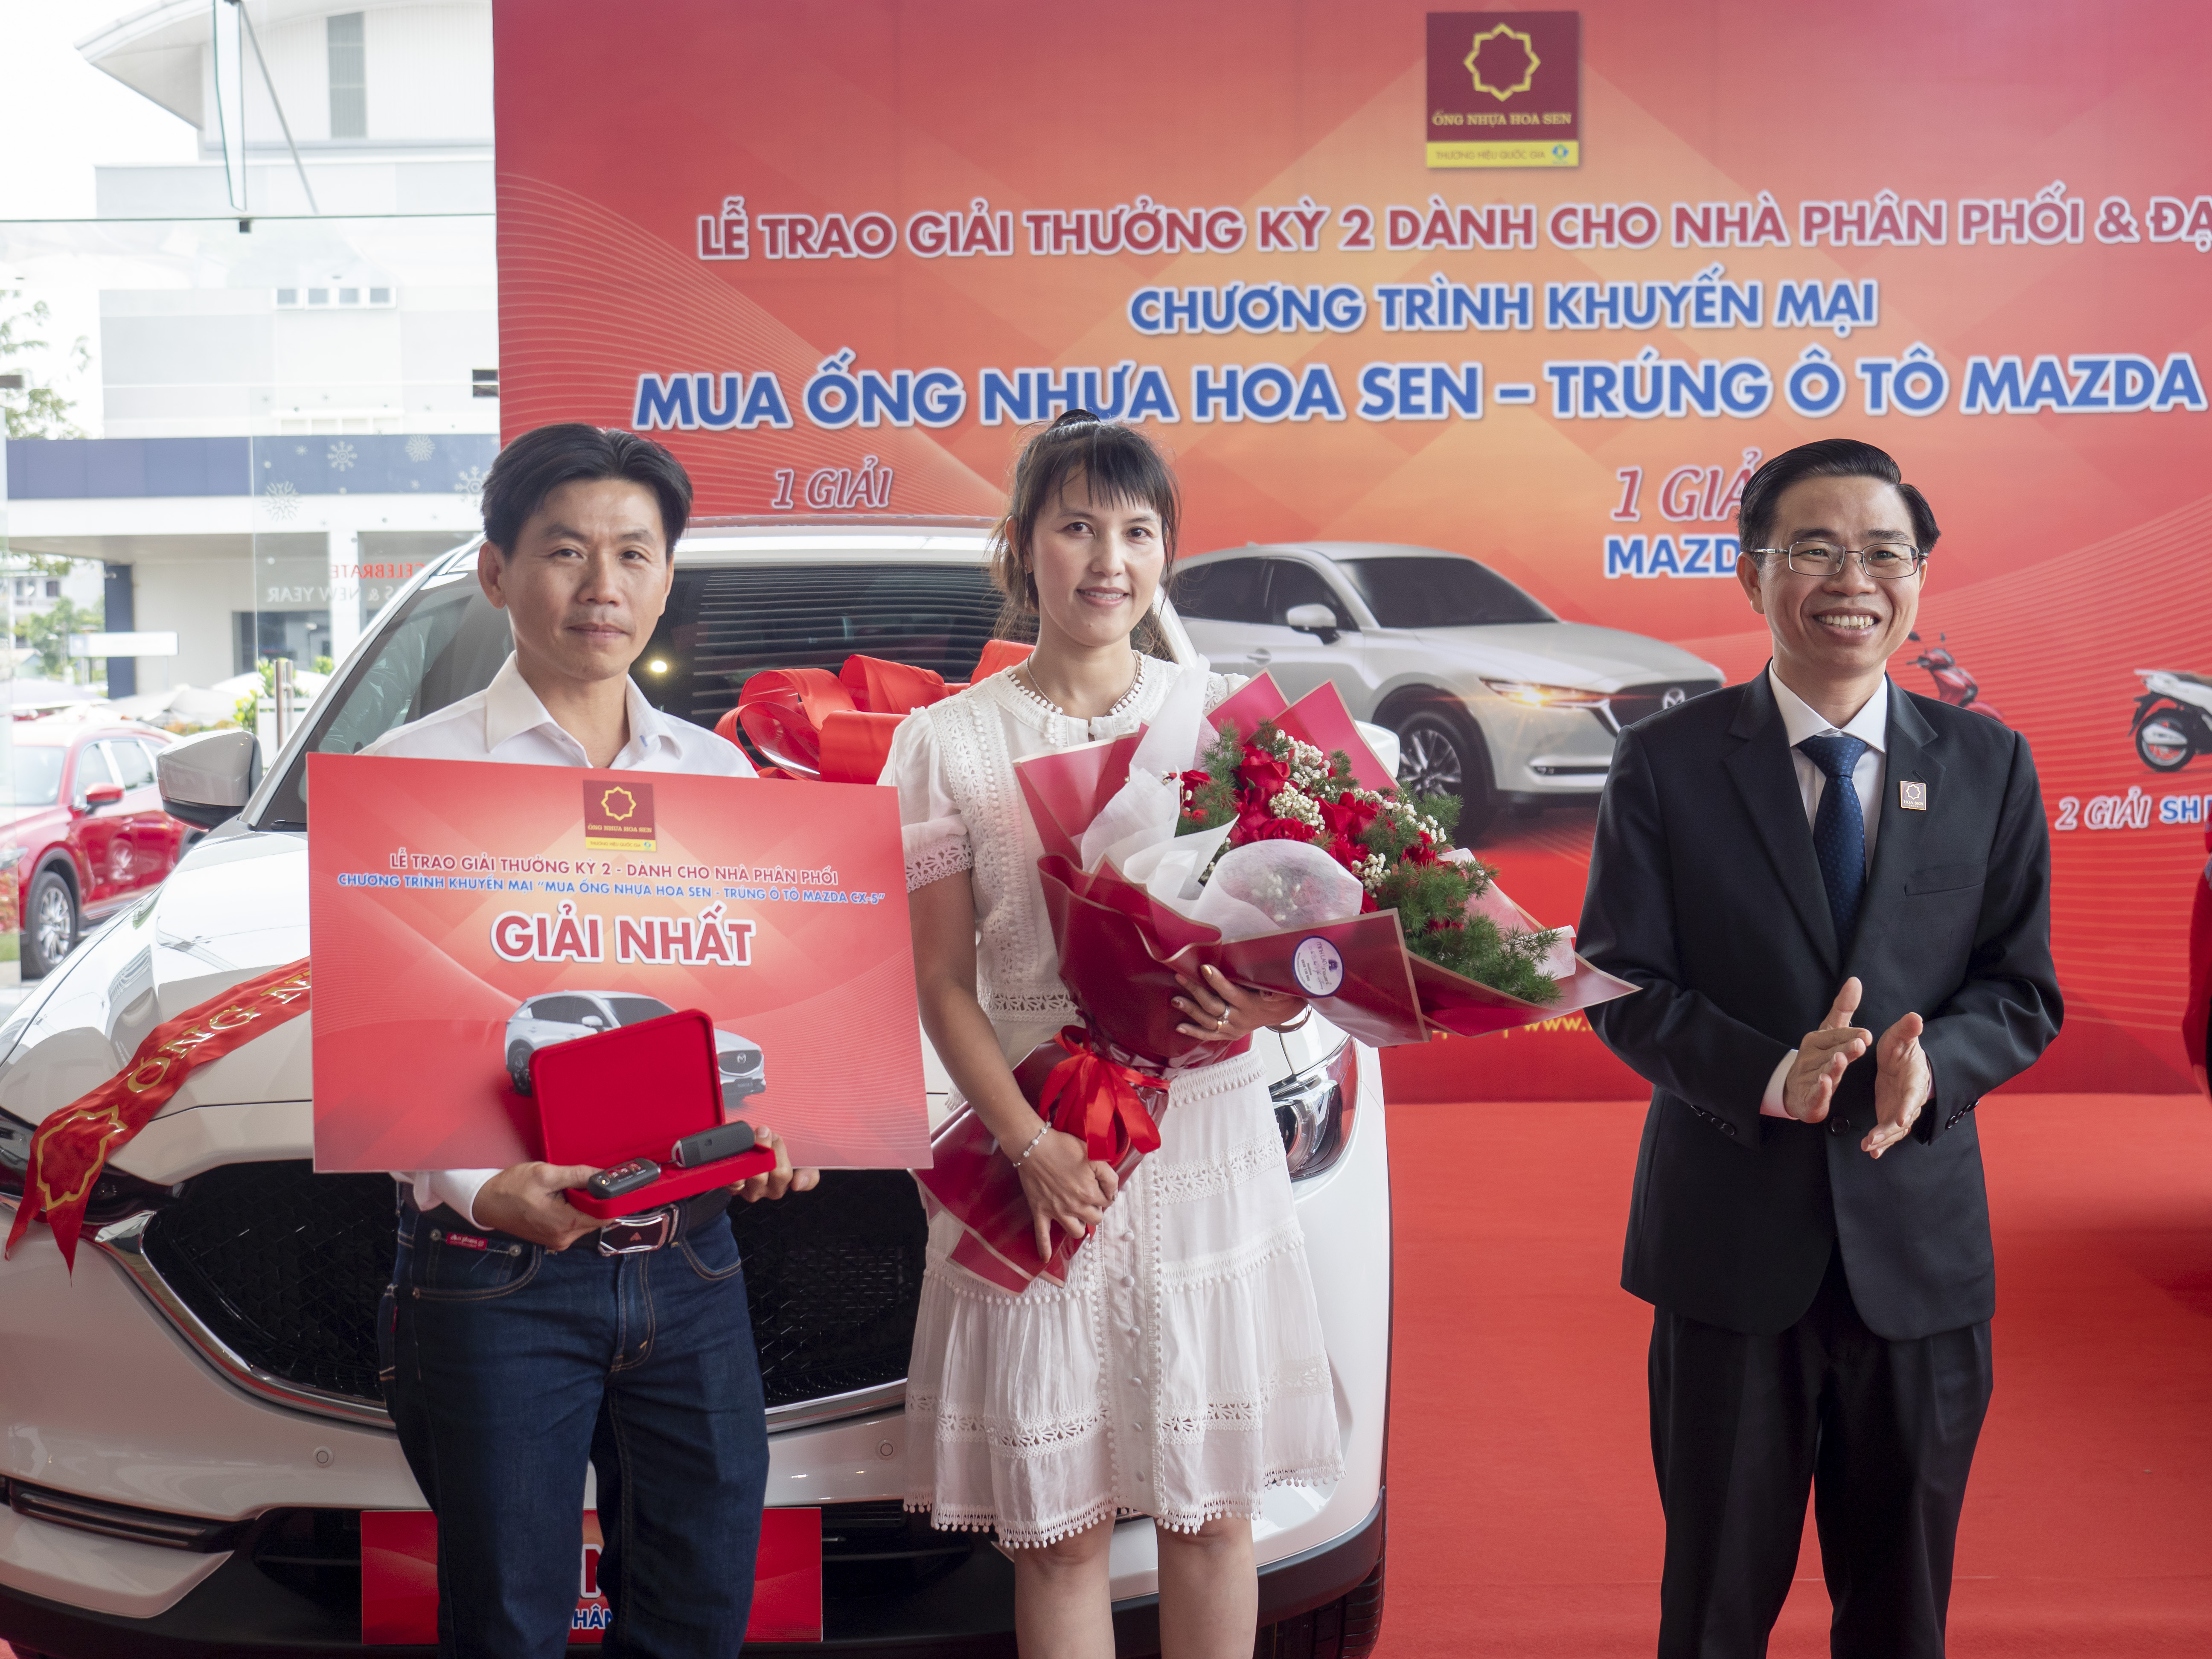 Ông Hồ Thanh Hiếu – Phó Tổng Giám đốc Tập đoàn Hoa Sen trao thưởng giải nhất - 01 chiếc ôtô Mazda CX-5 cho NPP Kha Văn Phước, tỉnh Kiên Giang